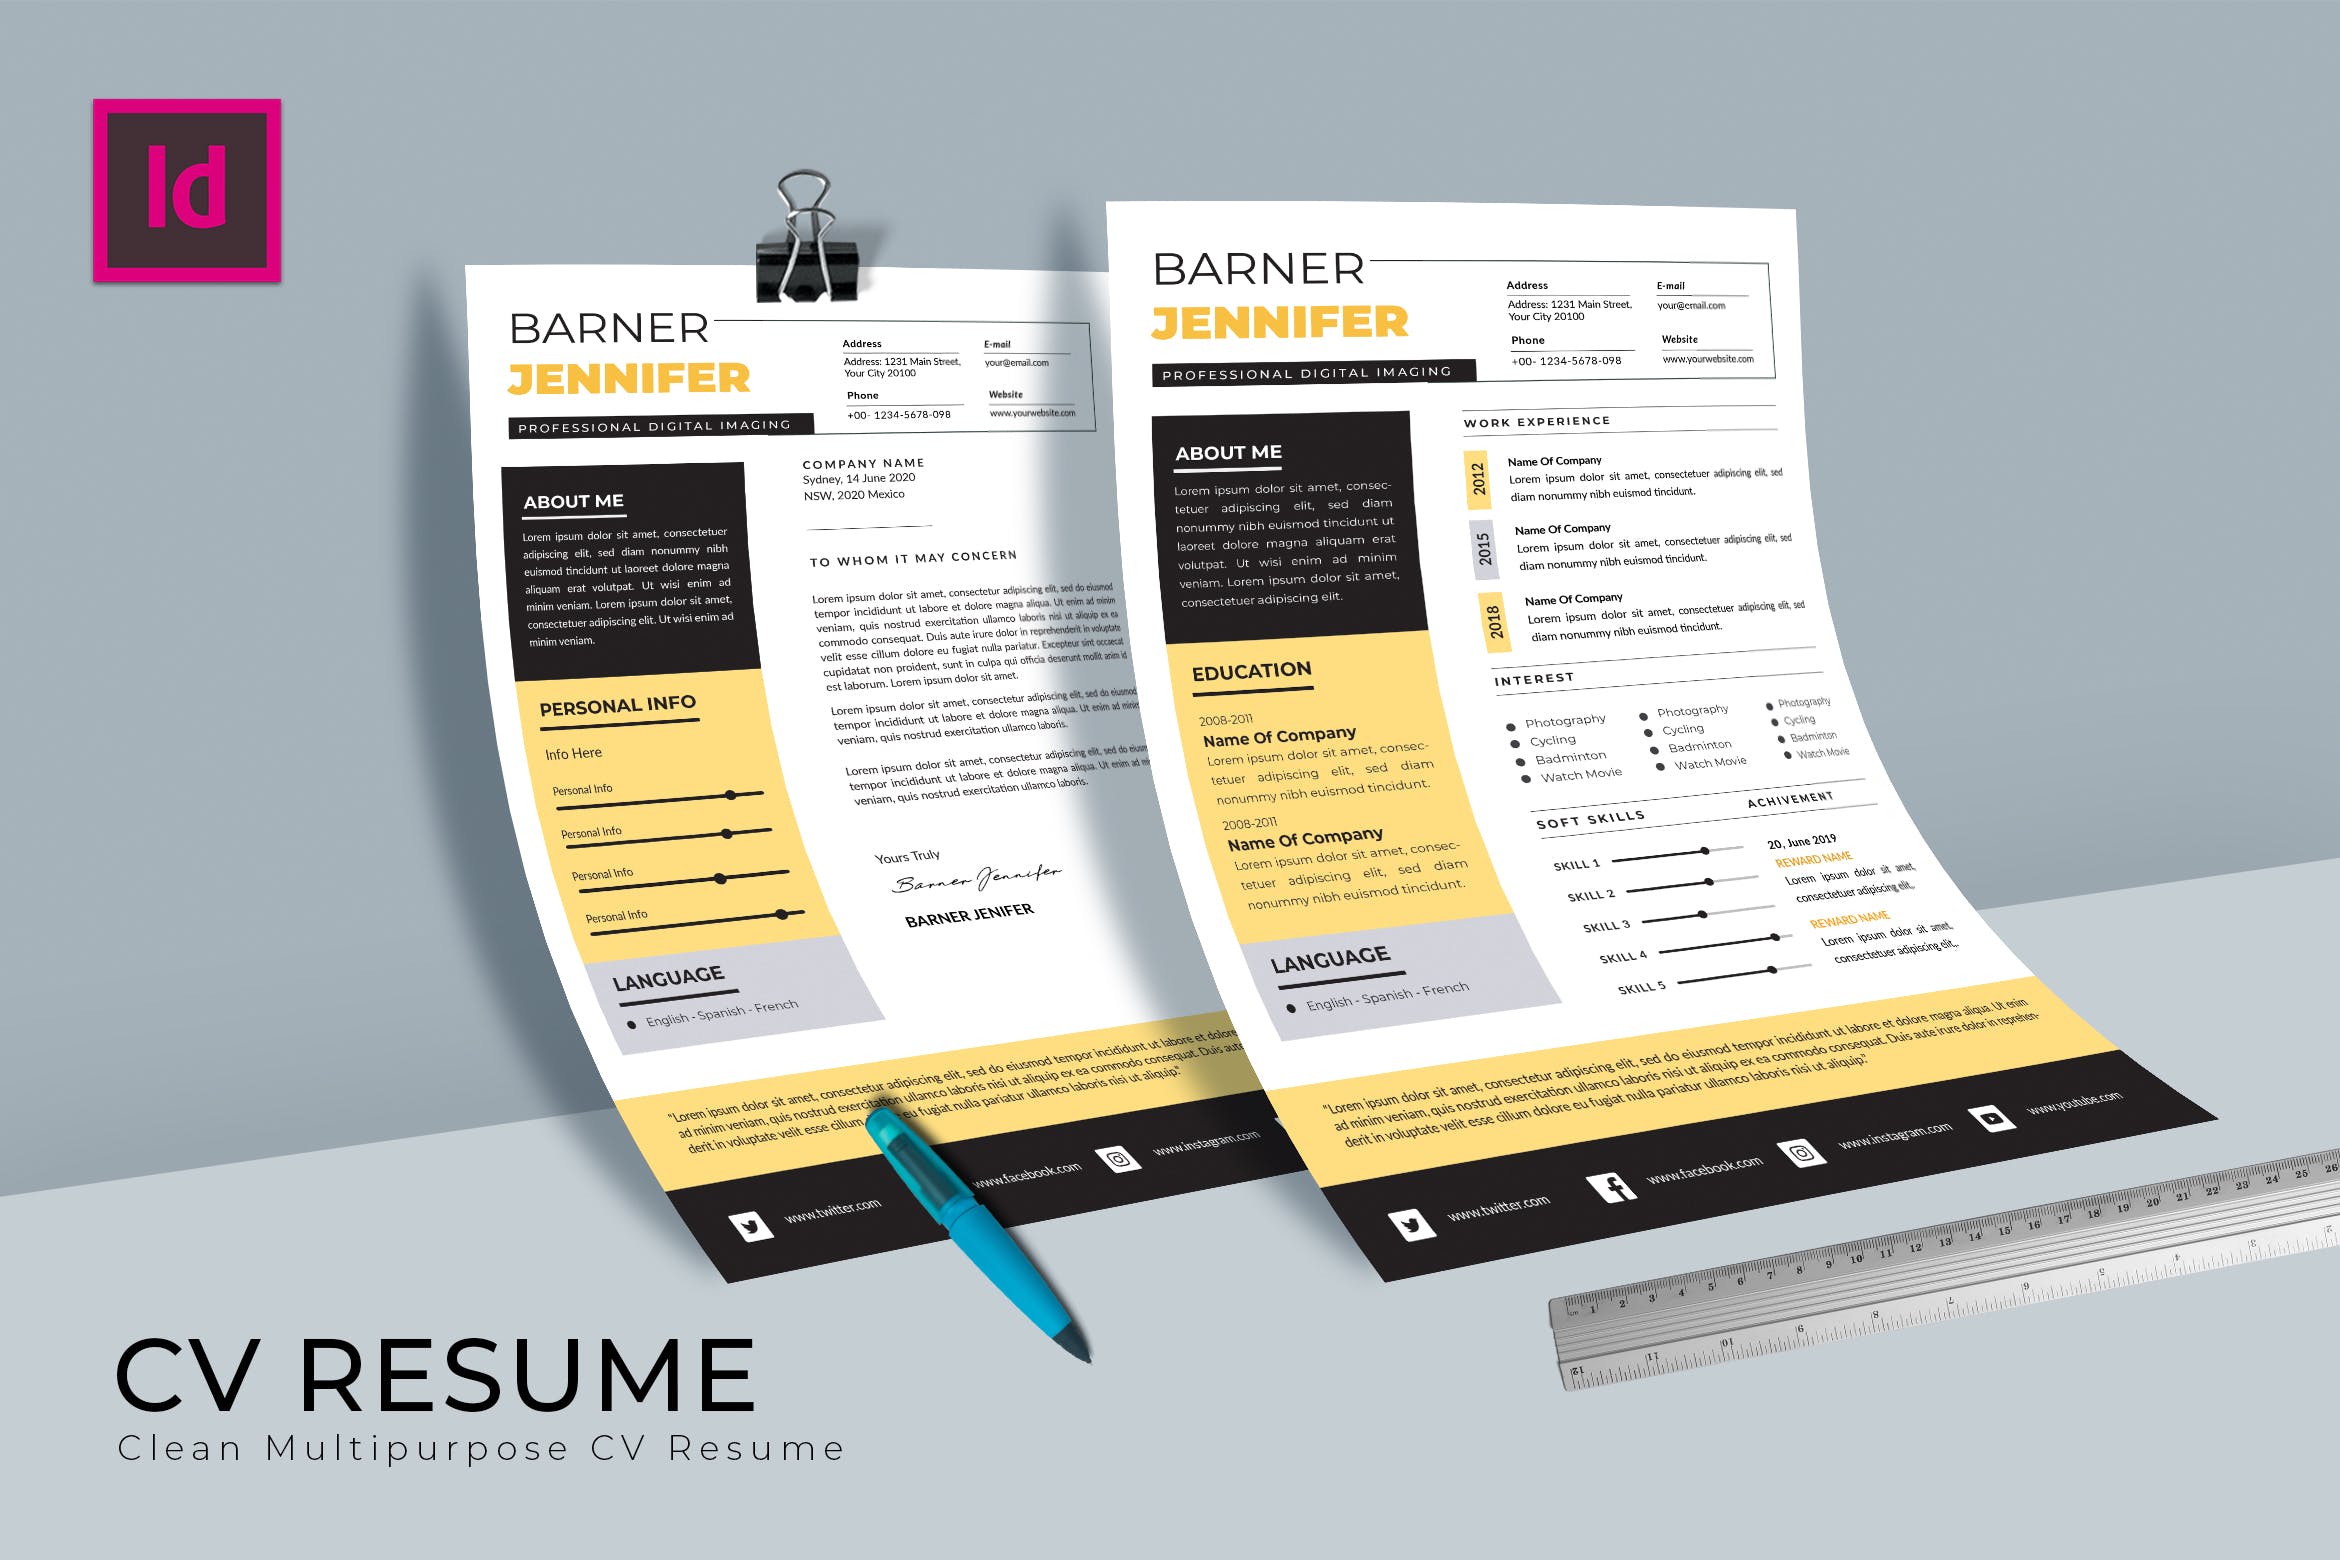 特色排版设计个人简历&推荐信模板 Barner CV Resume Template插图